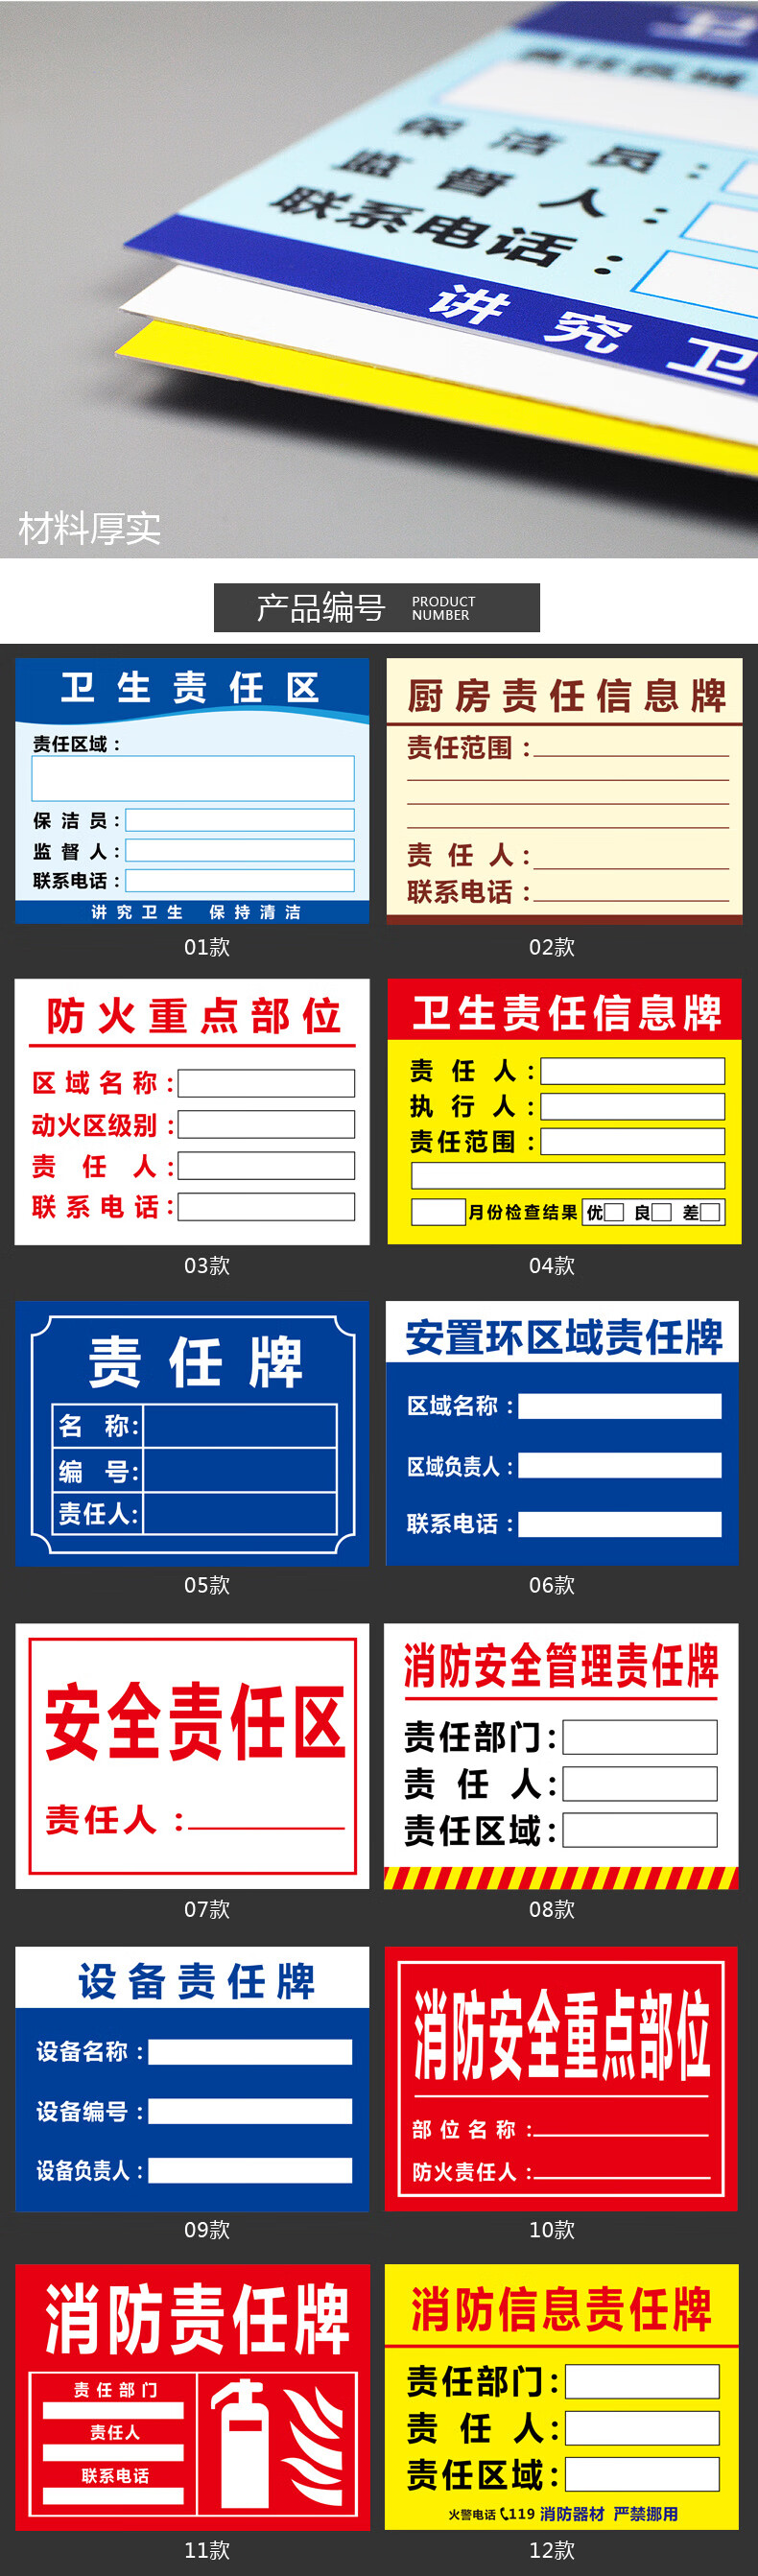 京选好货卫生区责任牌责任人标识牌消防安全责任公示牌设备区域名称牌